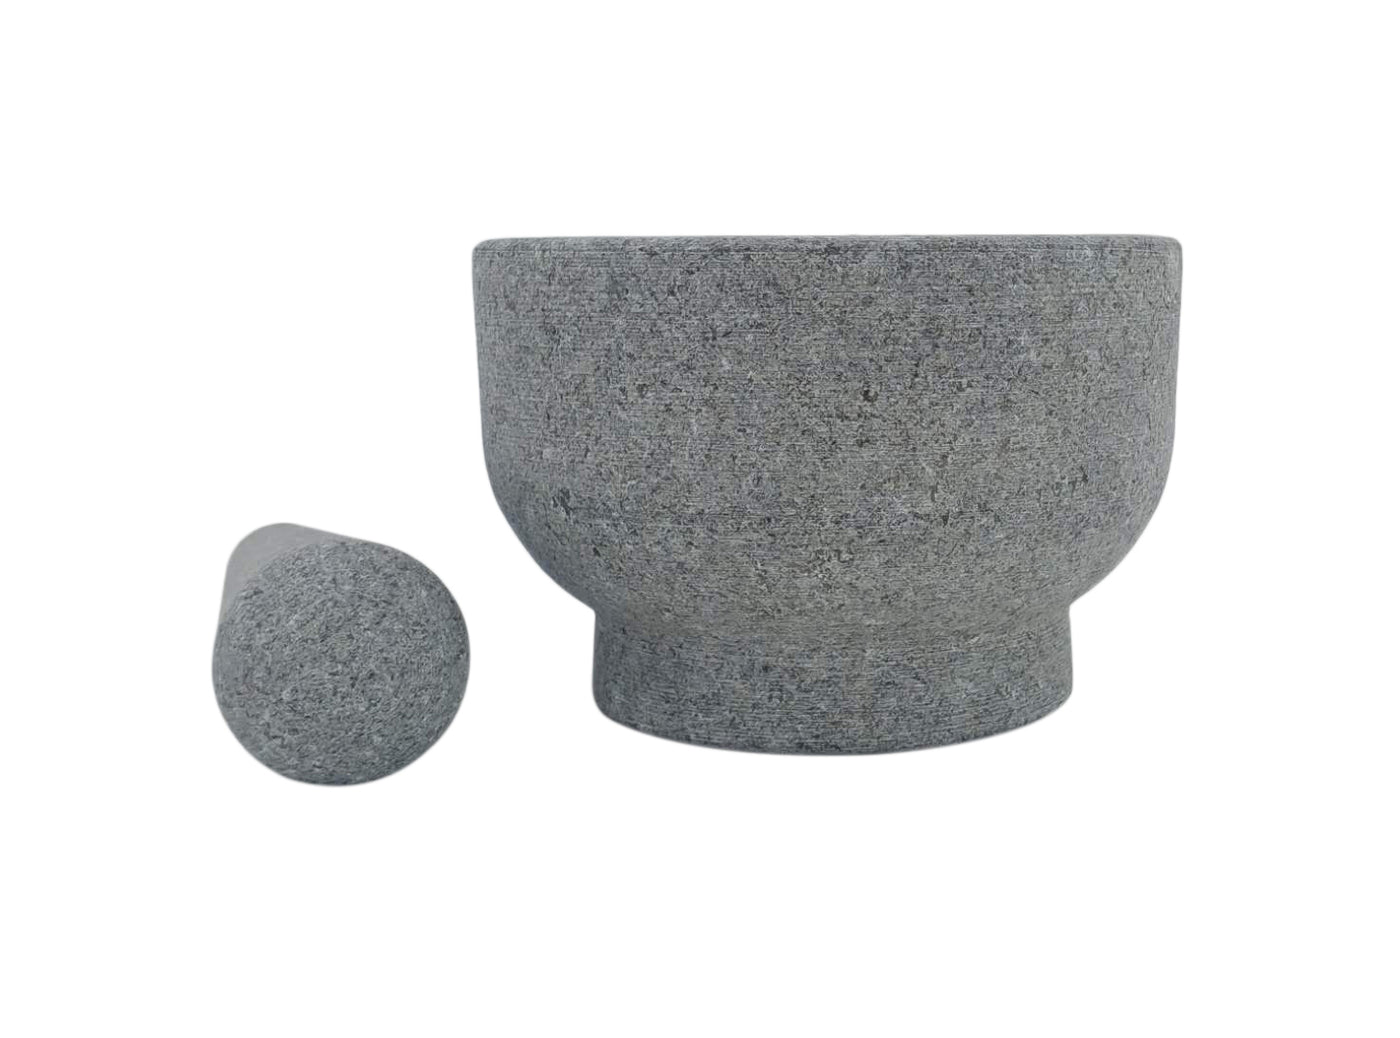 Mörser- und Stößel-Set aus Granit, 2-1/3 Tassen Fassungsvermögen, 6 Zoll + Kratzschutz und Knoblauchschäler